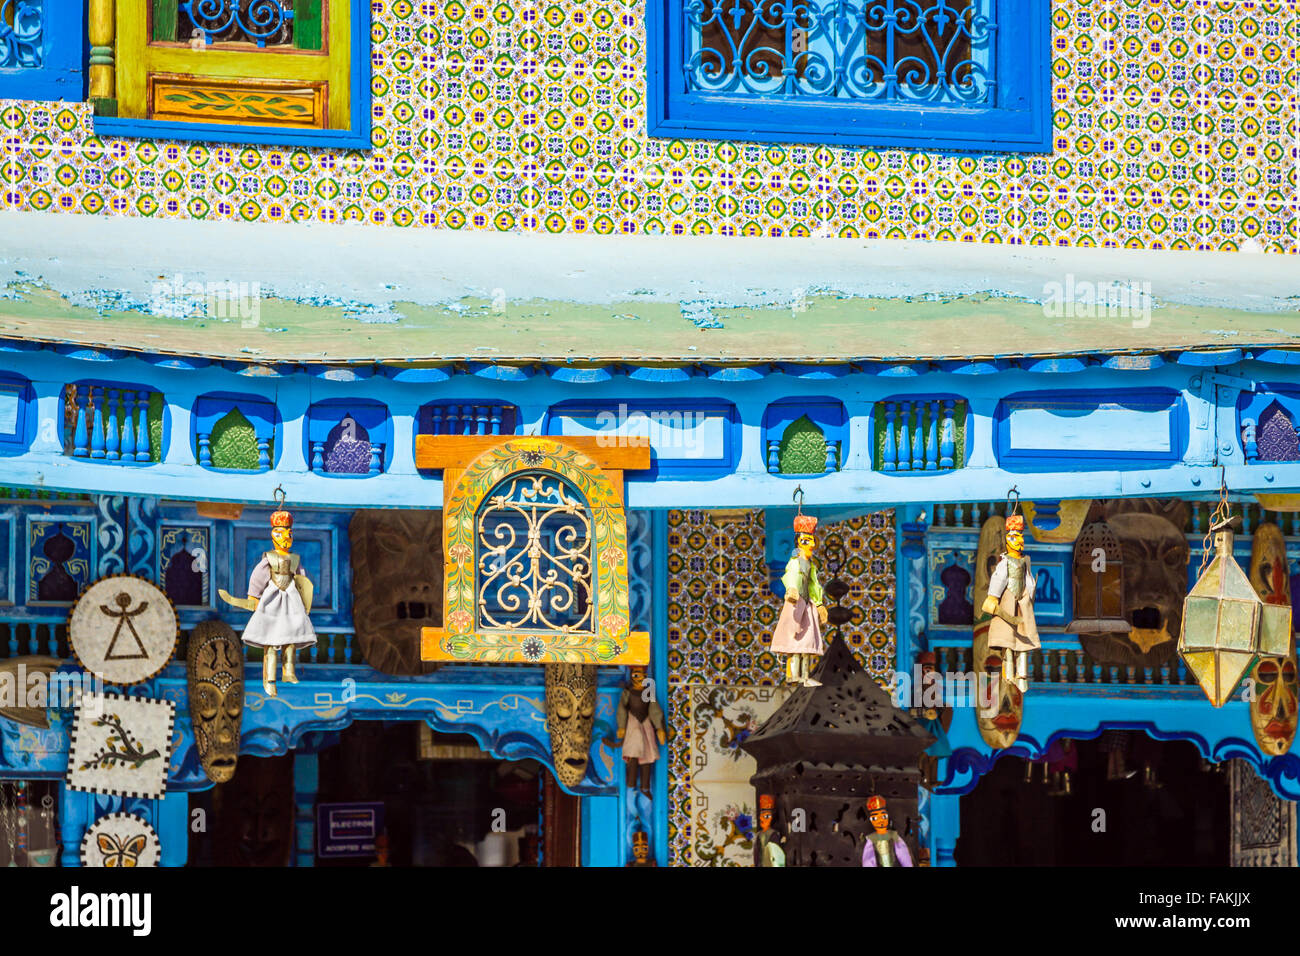 Traditional Arabic architecture in El-Jem, Tunisia Stock Photo